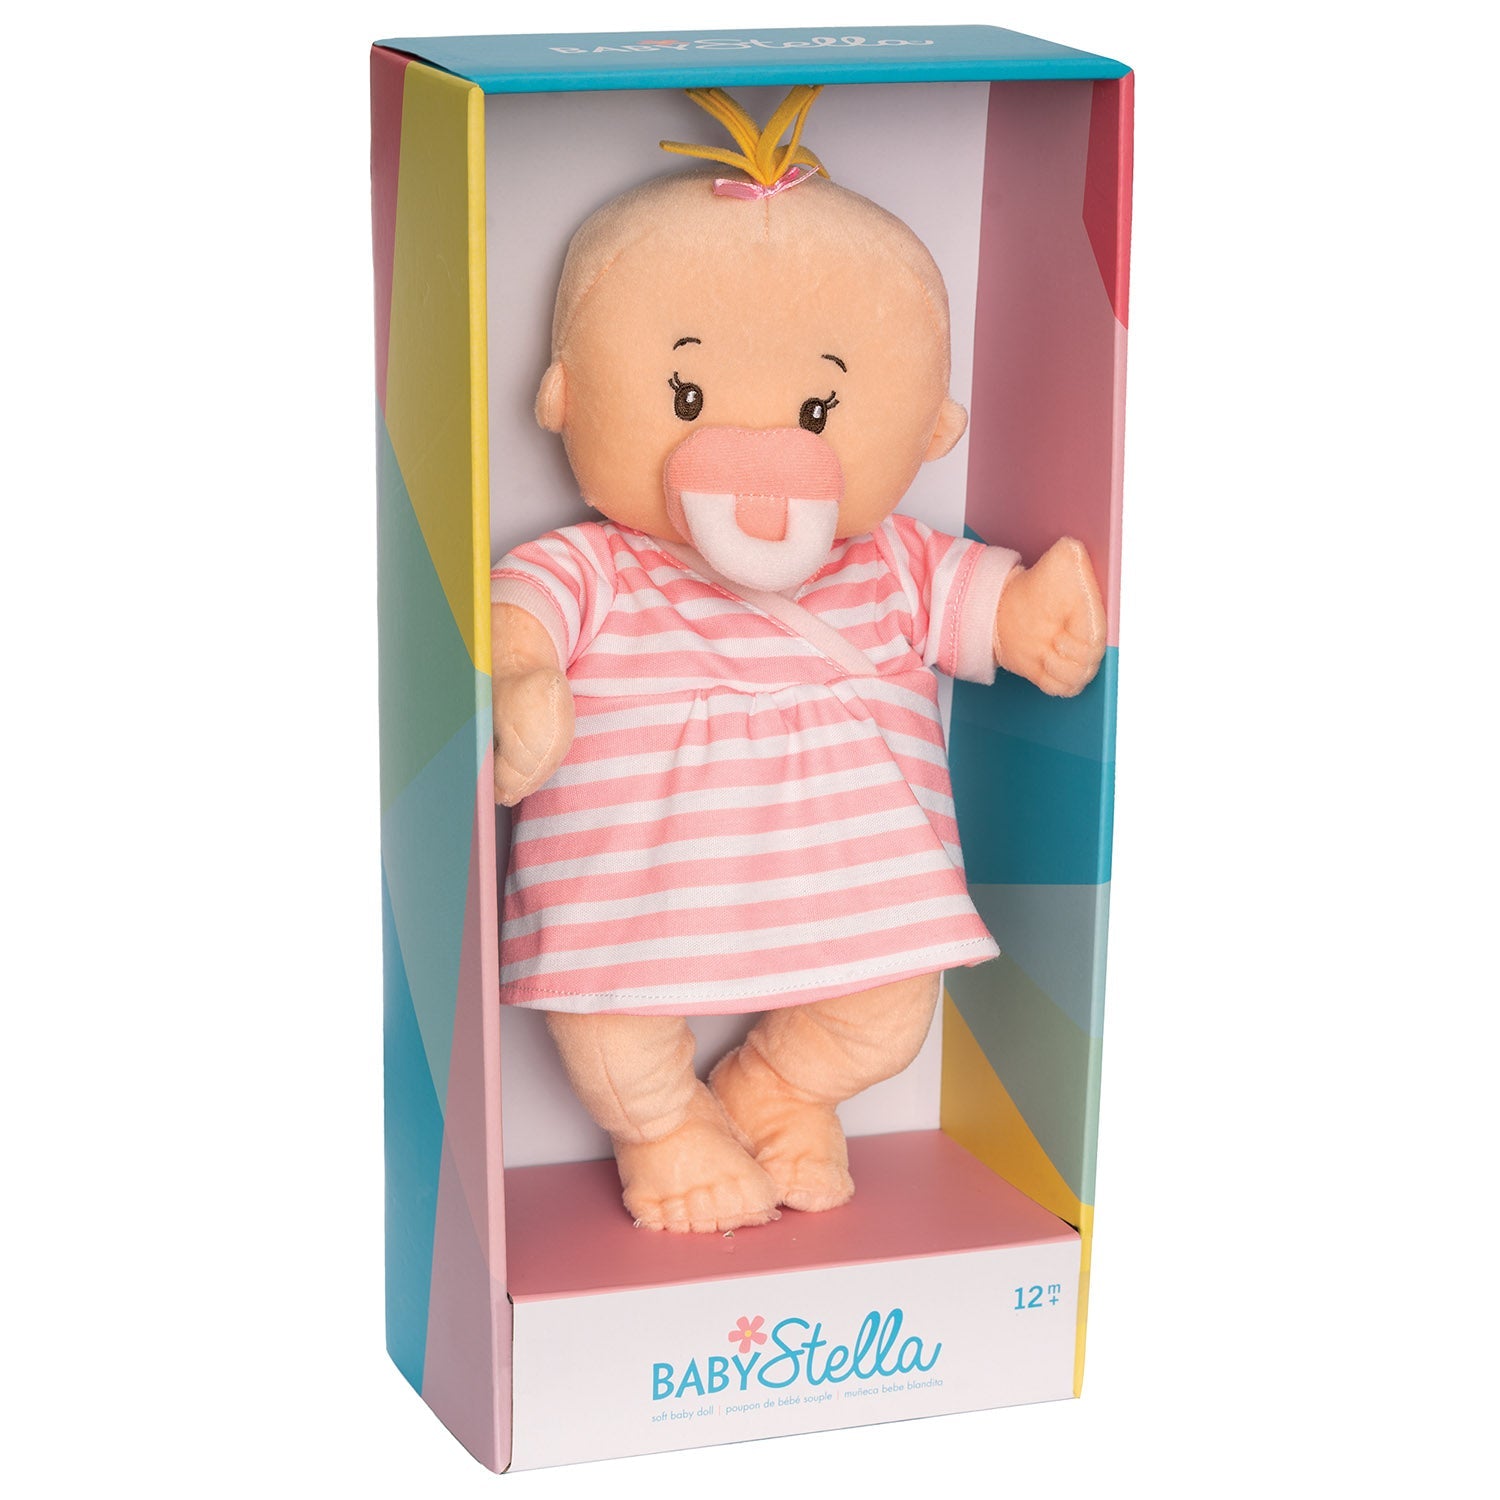 Manhattan Toy Baby Stella Peach Doll with Blonde Hair - Pink Dress Dolls